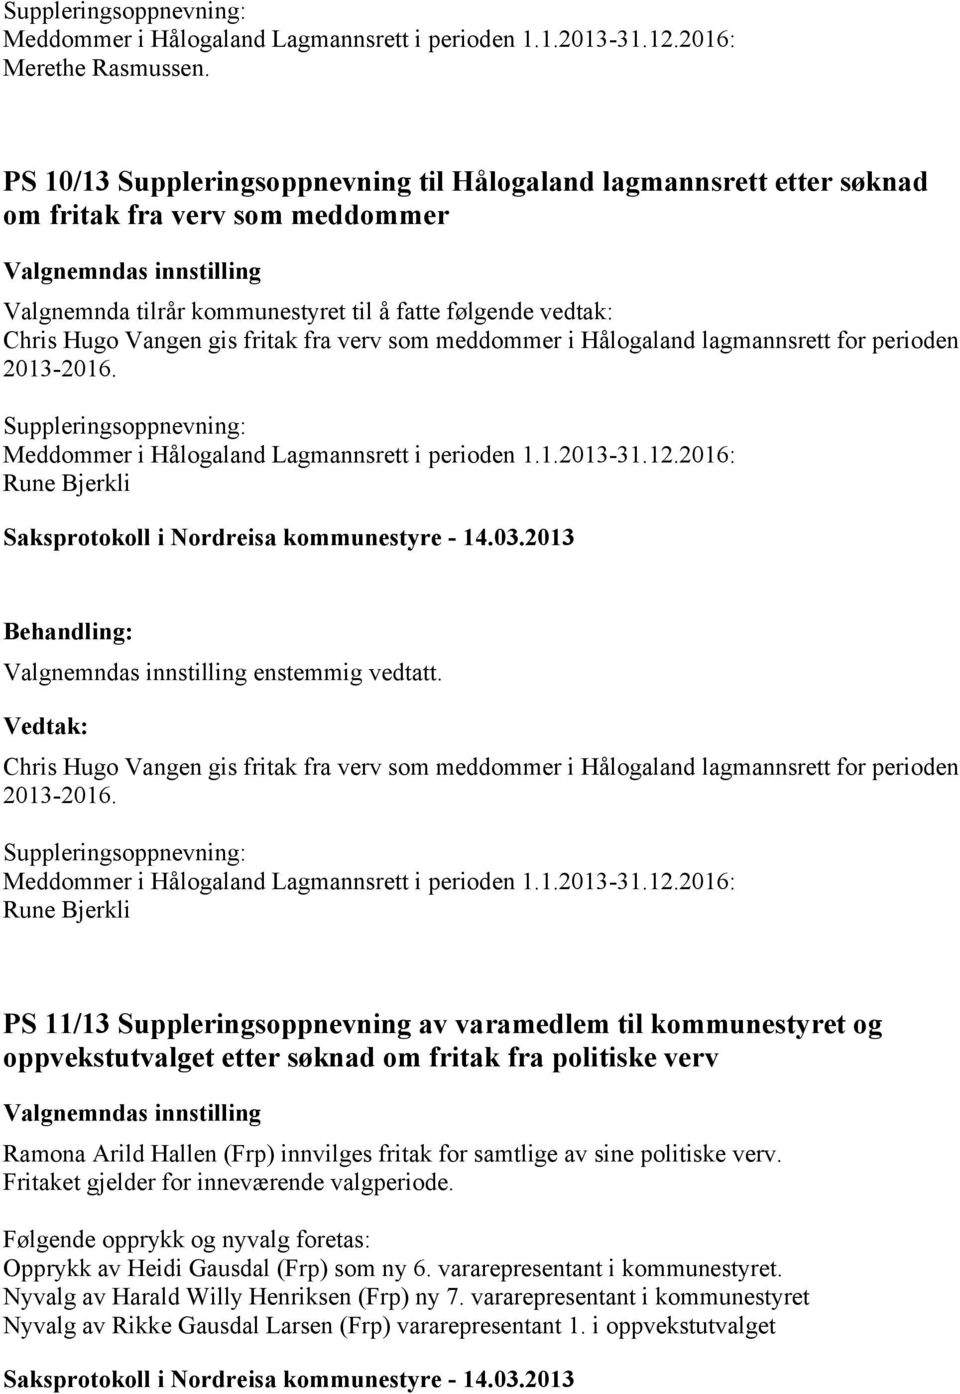 Hugo Vangen gis fritak fra verv som meddommer i Hålogaland lagmannsrett for perioden 2013-2016. Suppleringsoppnevning: Meddommer i Hålogaland Lagmannsrett i perioden 1.1.2013-31.12.